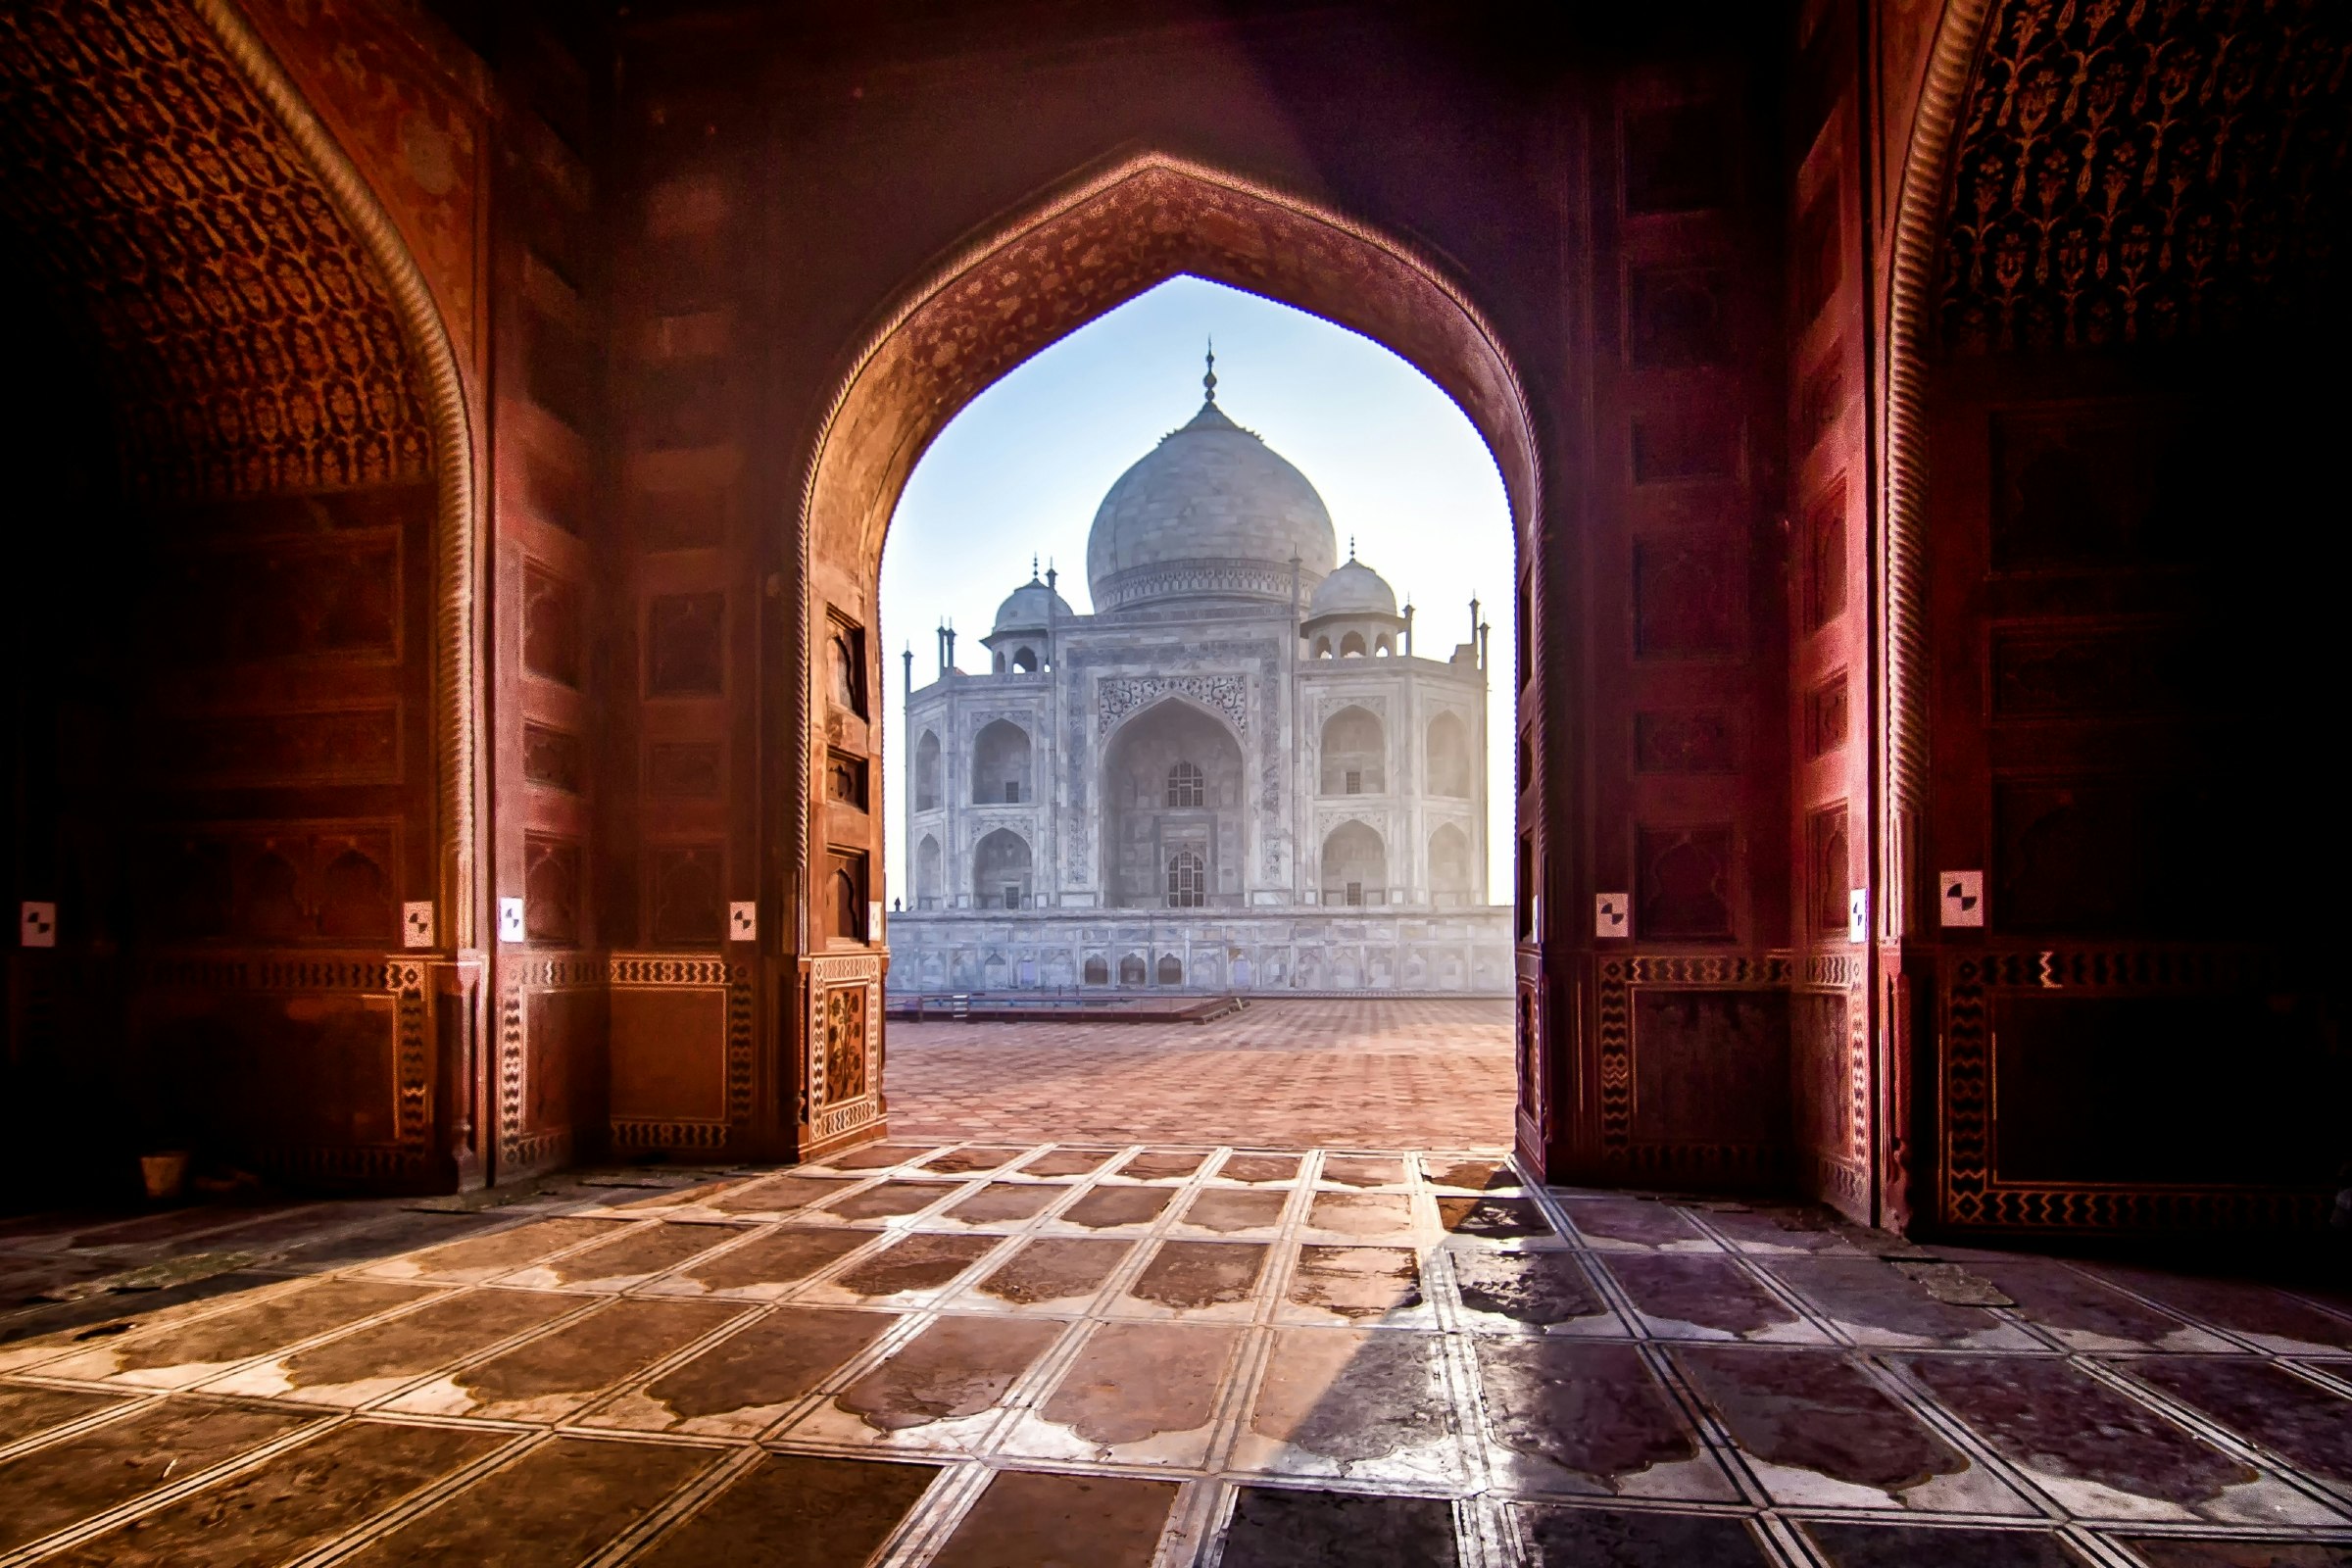 Taj Mahal.jpg